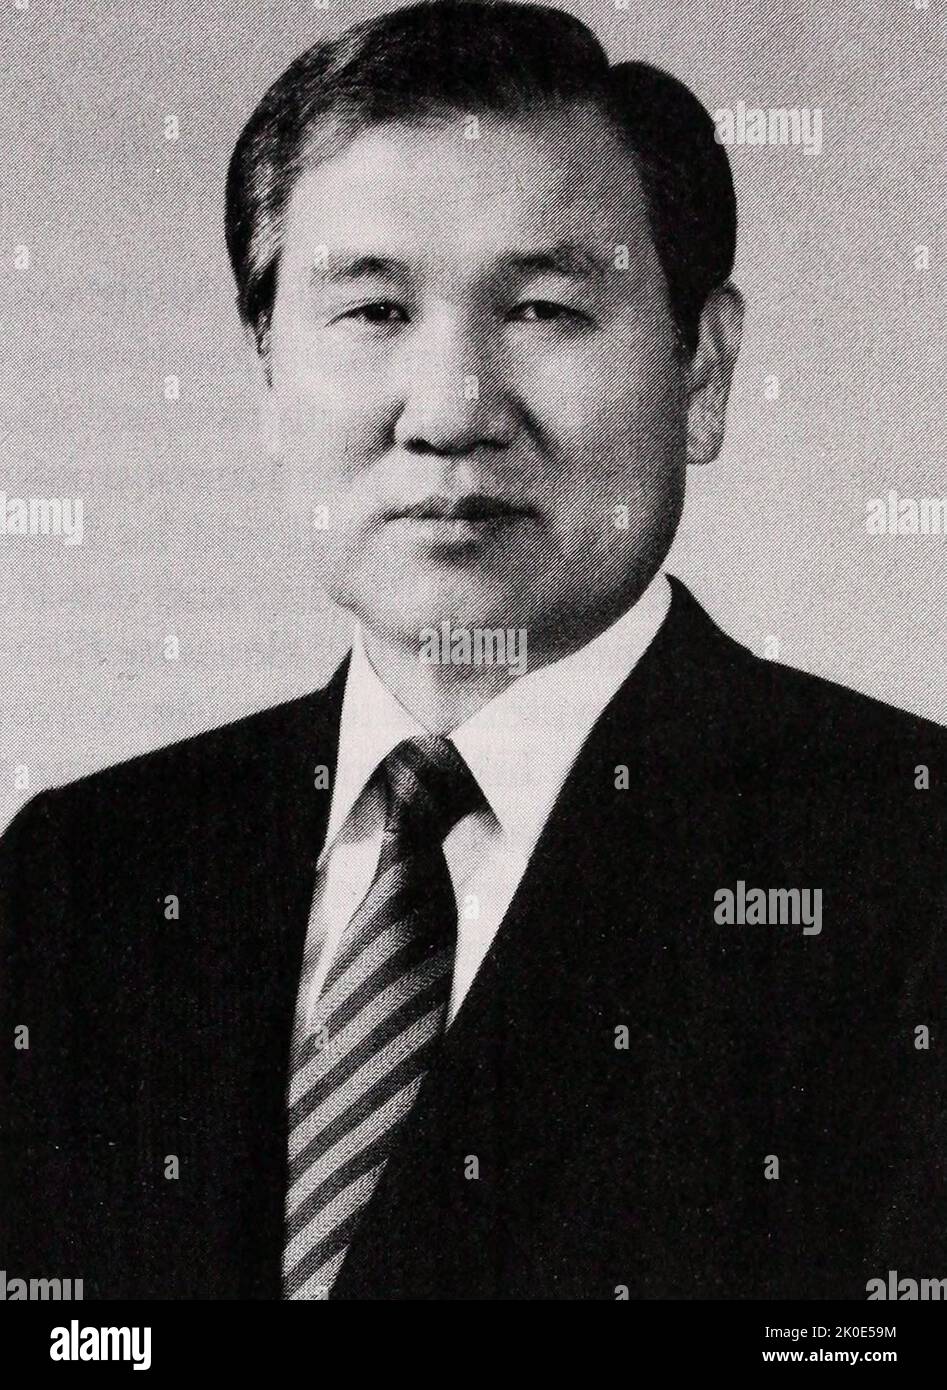 Roh Tae-woo (geboren 1932), ehemaliger südkoreanischer Politiker und Armeegeneral, der von 1988 bis 1993 als Präsident von Südkorea diente. Er war Vorsitzender der Partei der Demokratischen Gerechtigkeit und ist bekannt dafür, dass er 1987 die Erklärung vom Juni 29 verabschiedet hat. Stockfoto